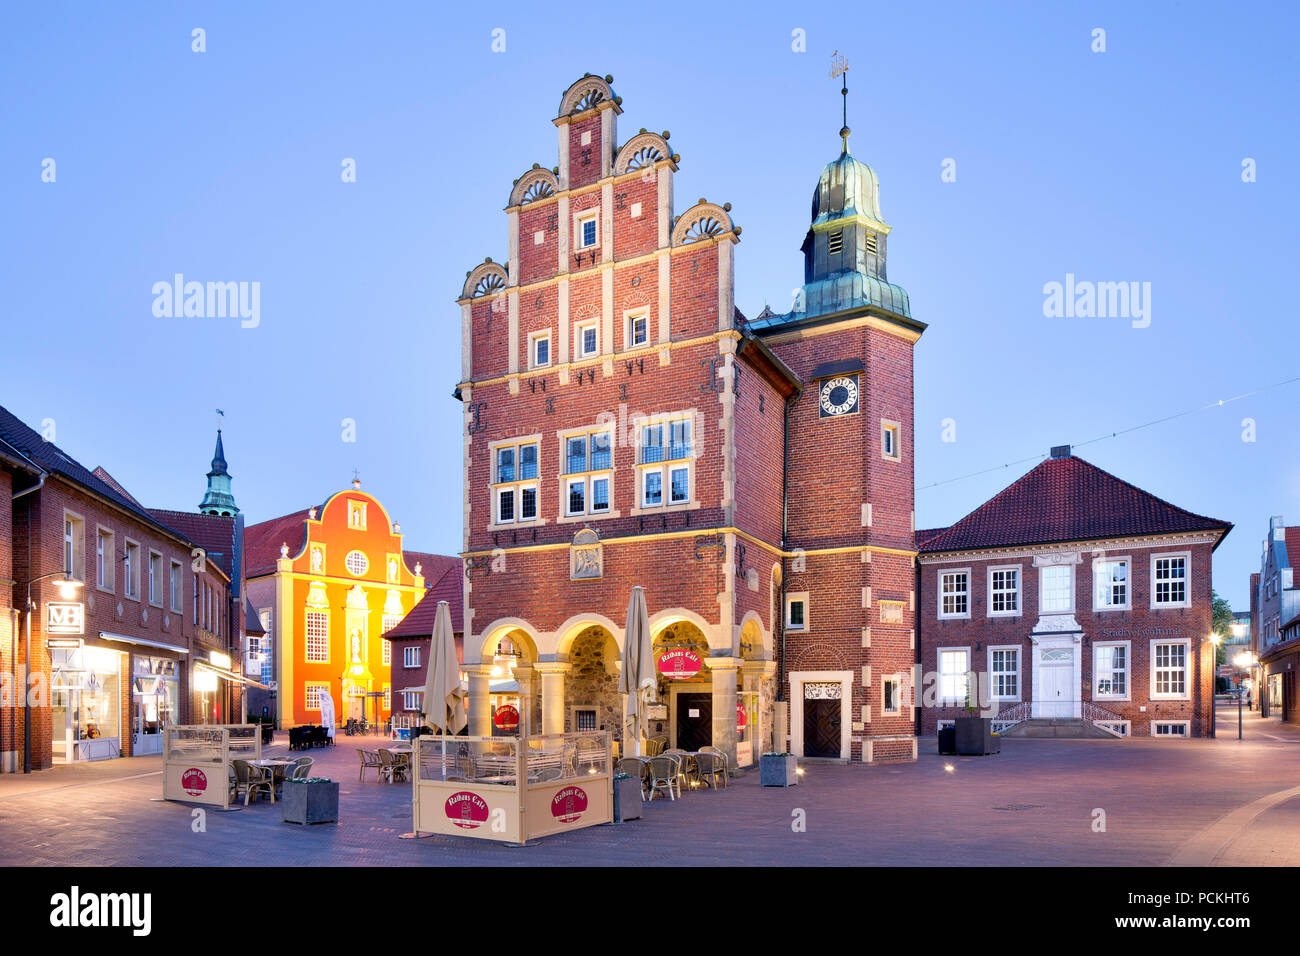 Historische Rathaus der Stadt Meppen mit Münsterland Stufengiebel in der Dämmerung, Meppen, Emsland, Niedersachsen, Deutschland Stockfoto